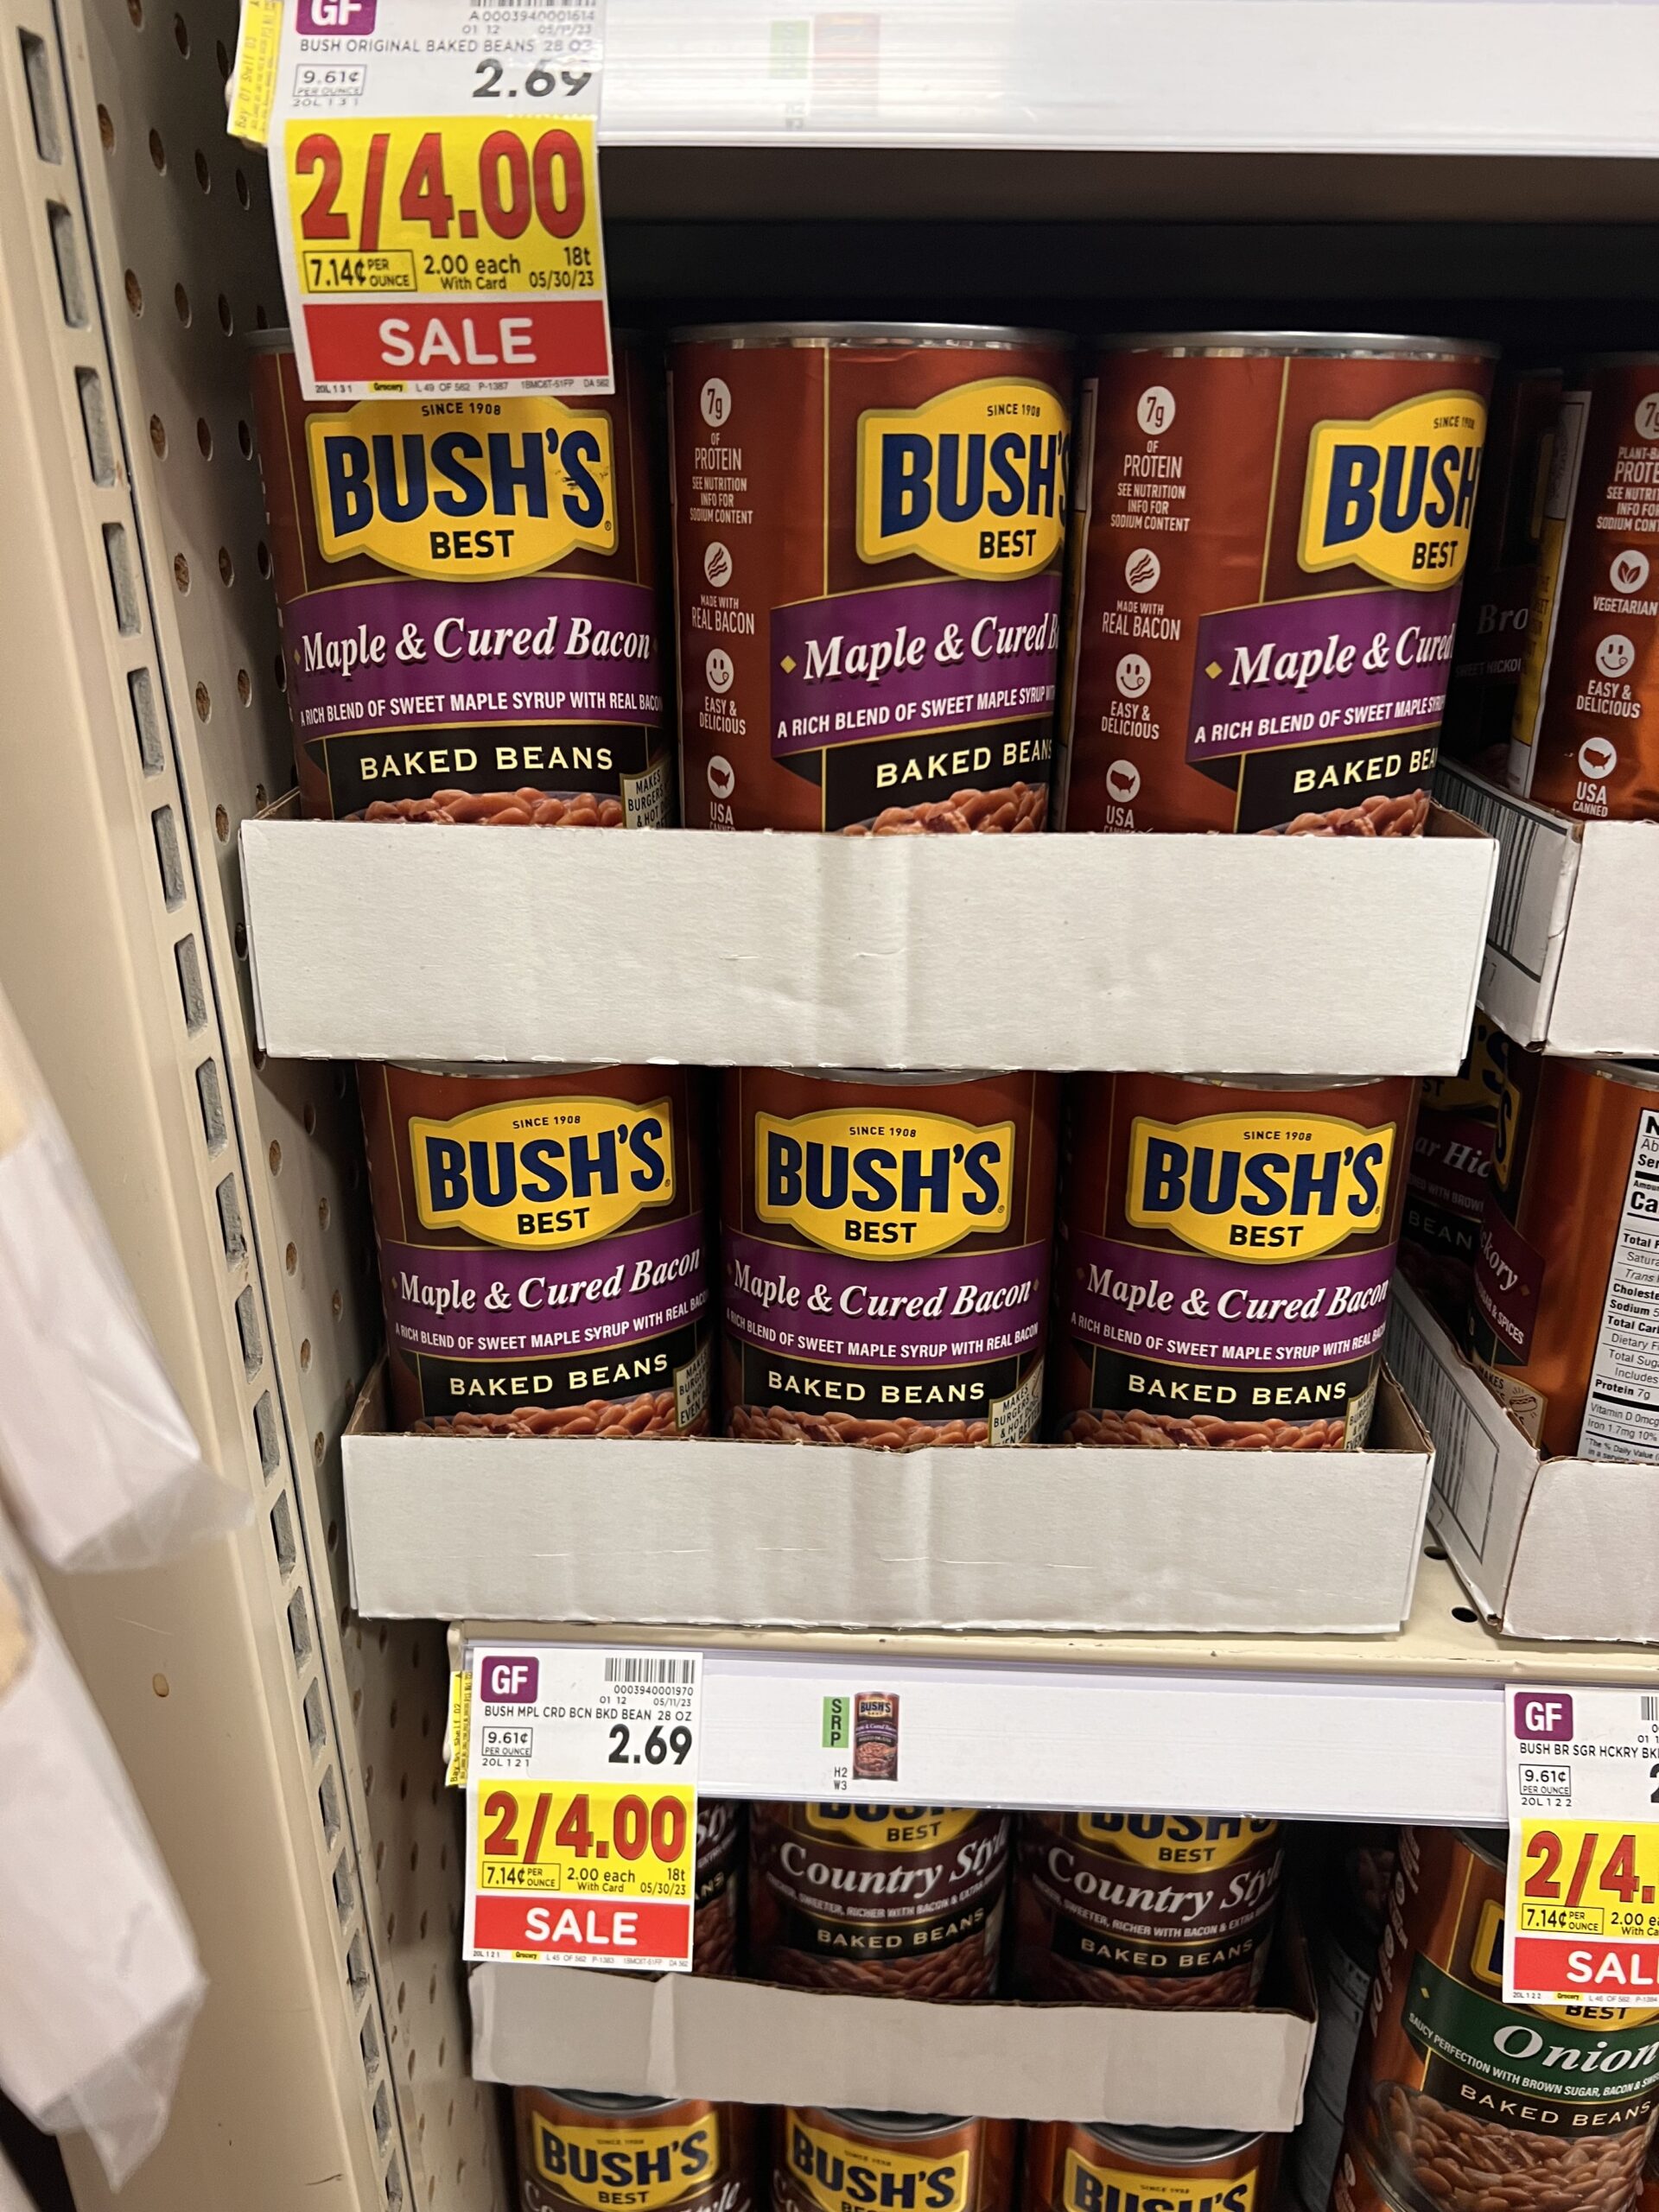 bush's beans kroger shelf image 6